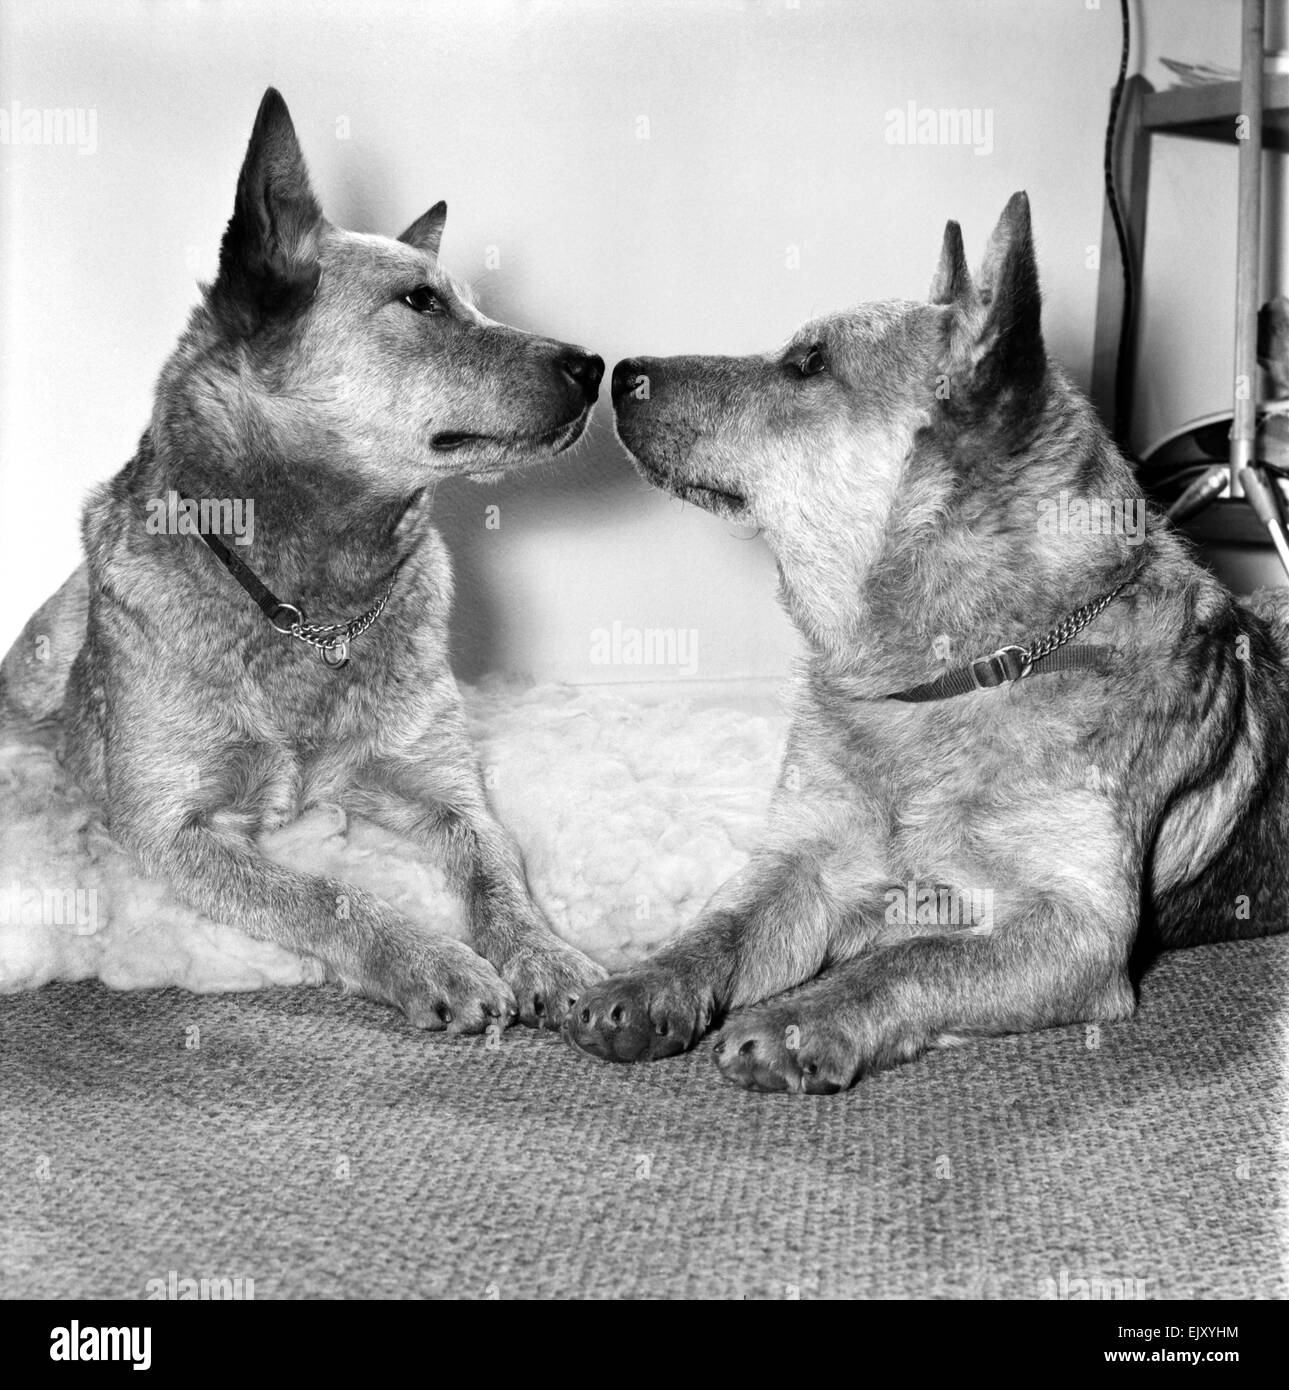 Animales: Perros: La historia será hecha en el Cruft's dog show de este año, cuando "miel" los 3 años perro de ganado australiano hace la primera aparición de su raza en el show del 14 de febrero, Día de San Valentín. Febrero de 1981 81-0571-008 Foto de stock